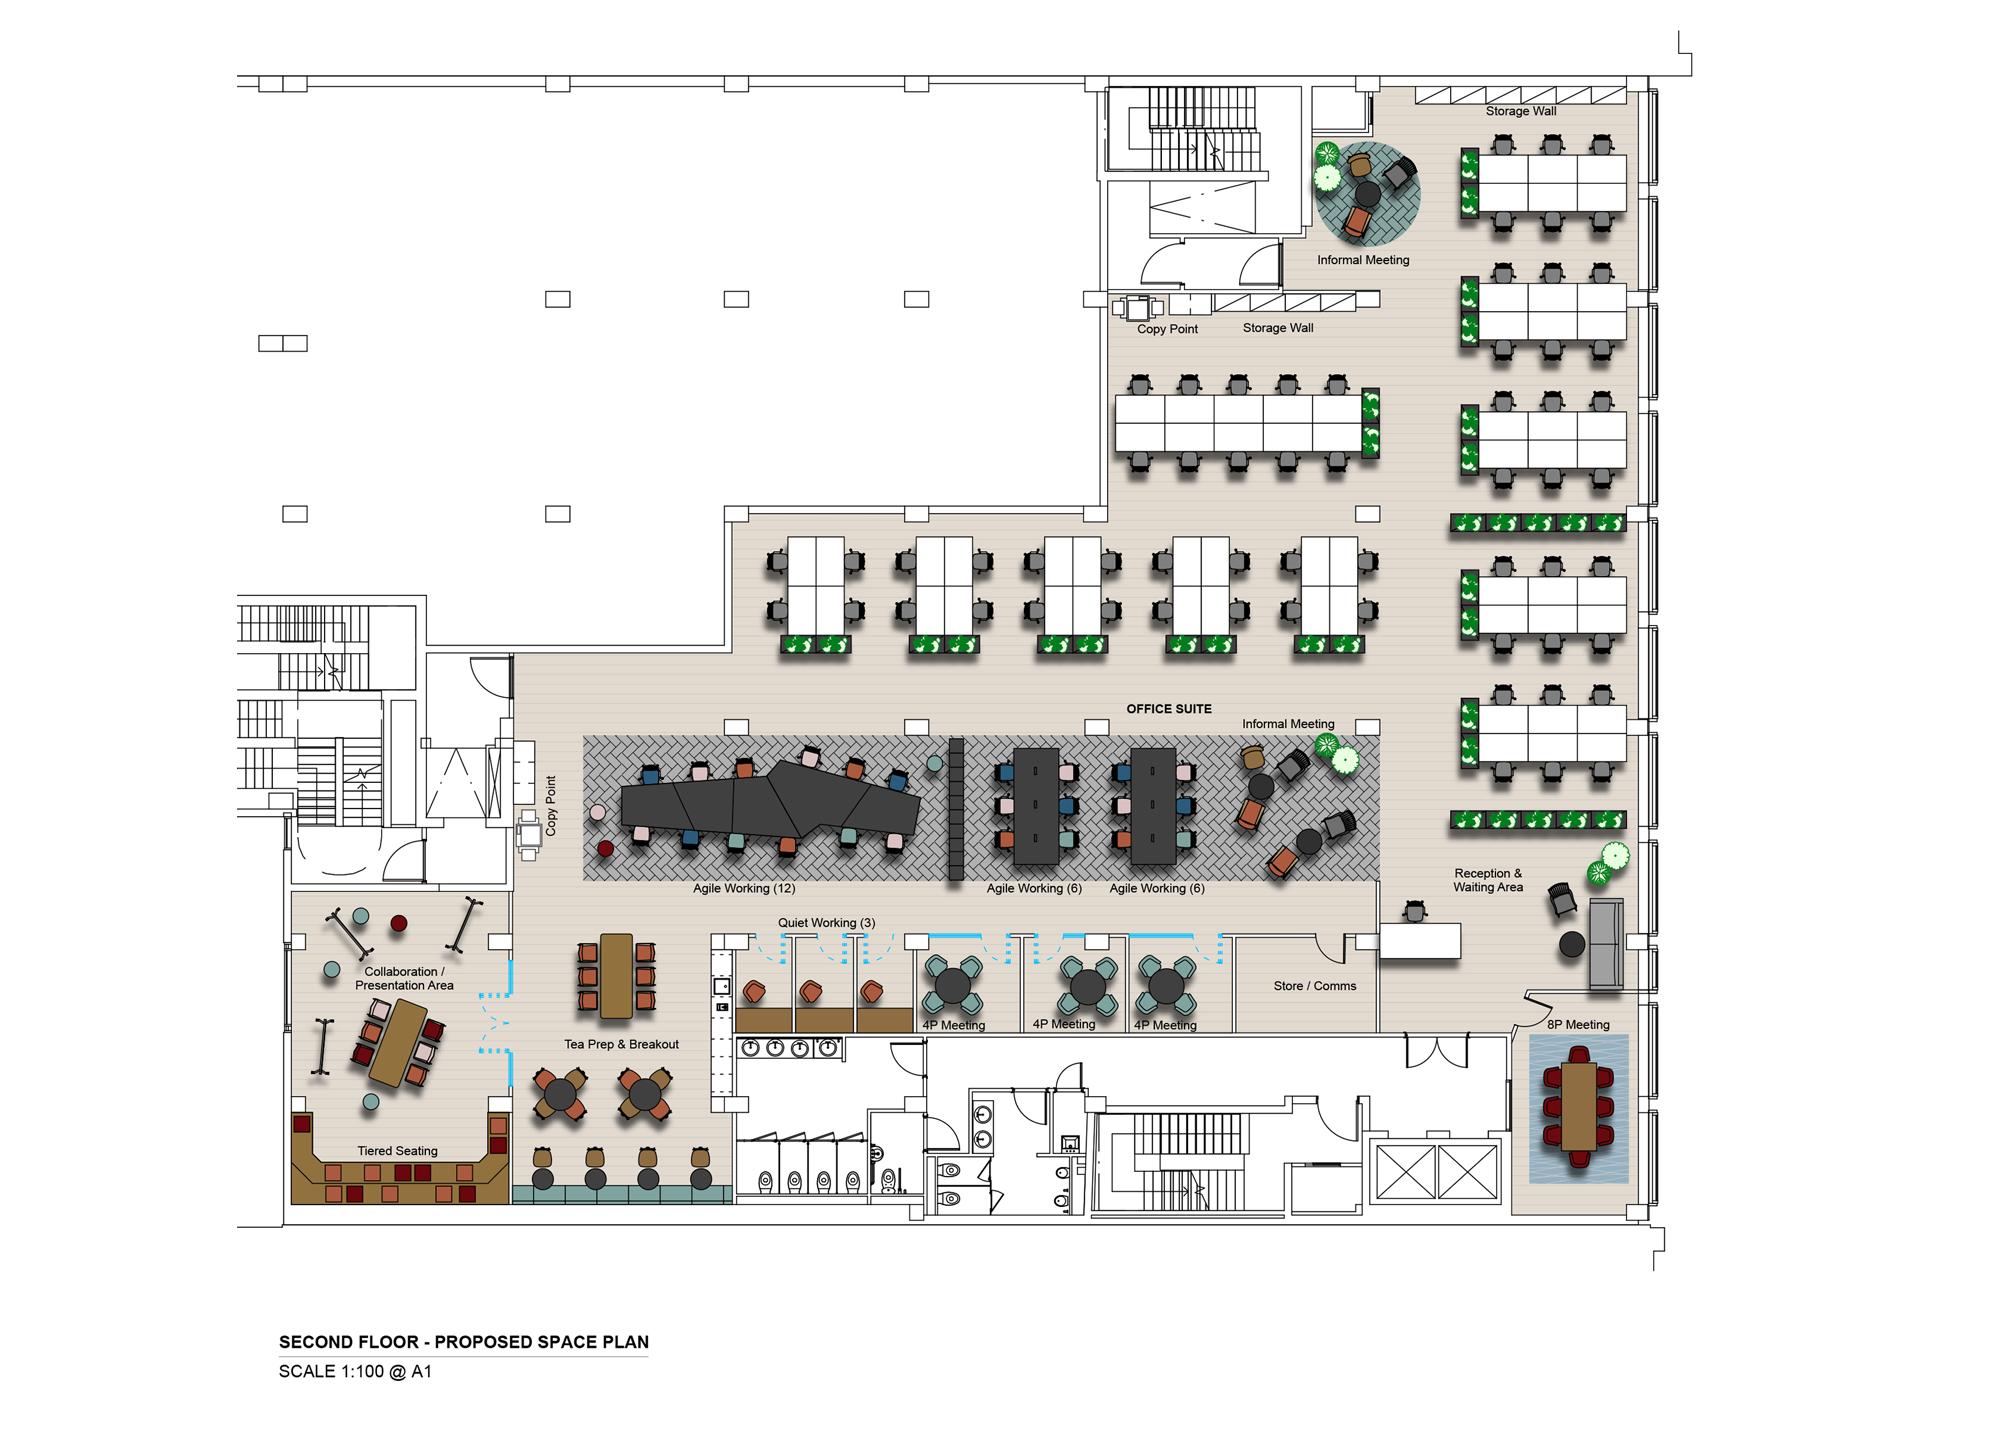 Second Floor Space Plan 1 8